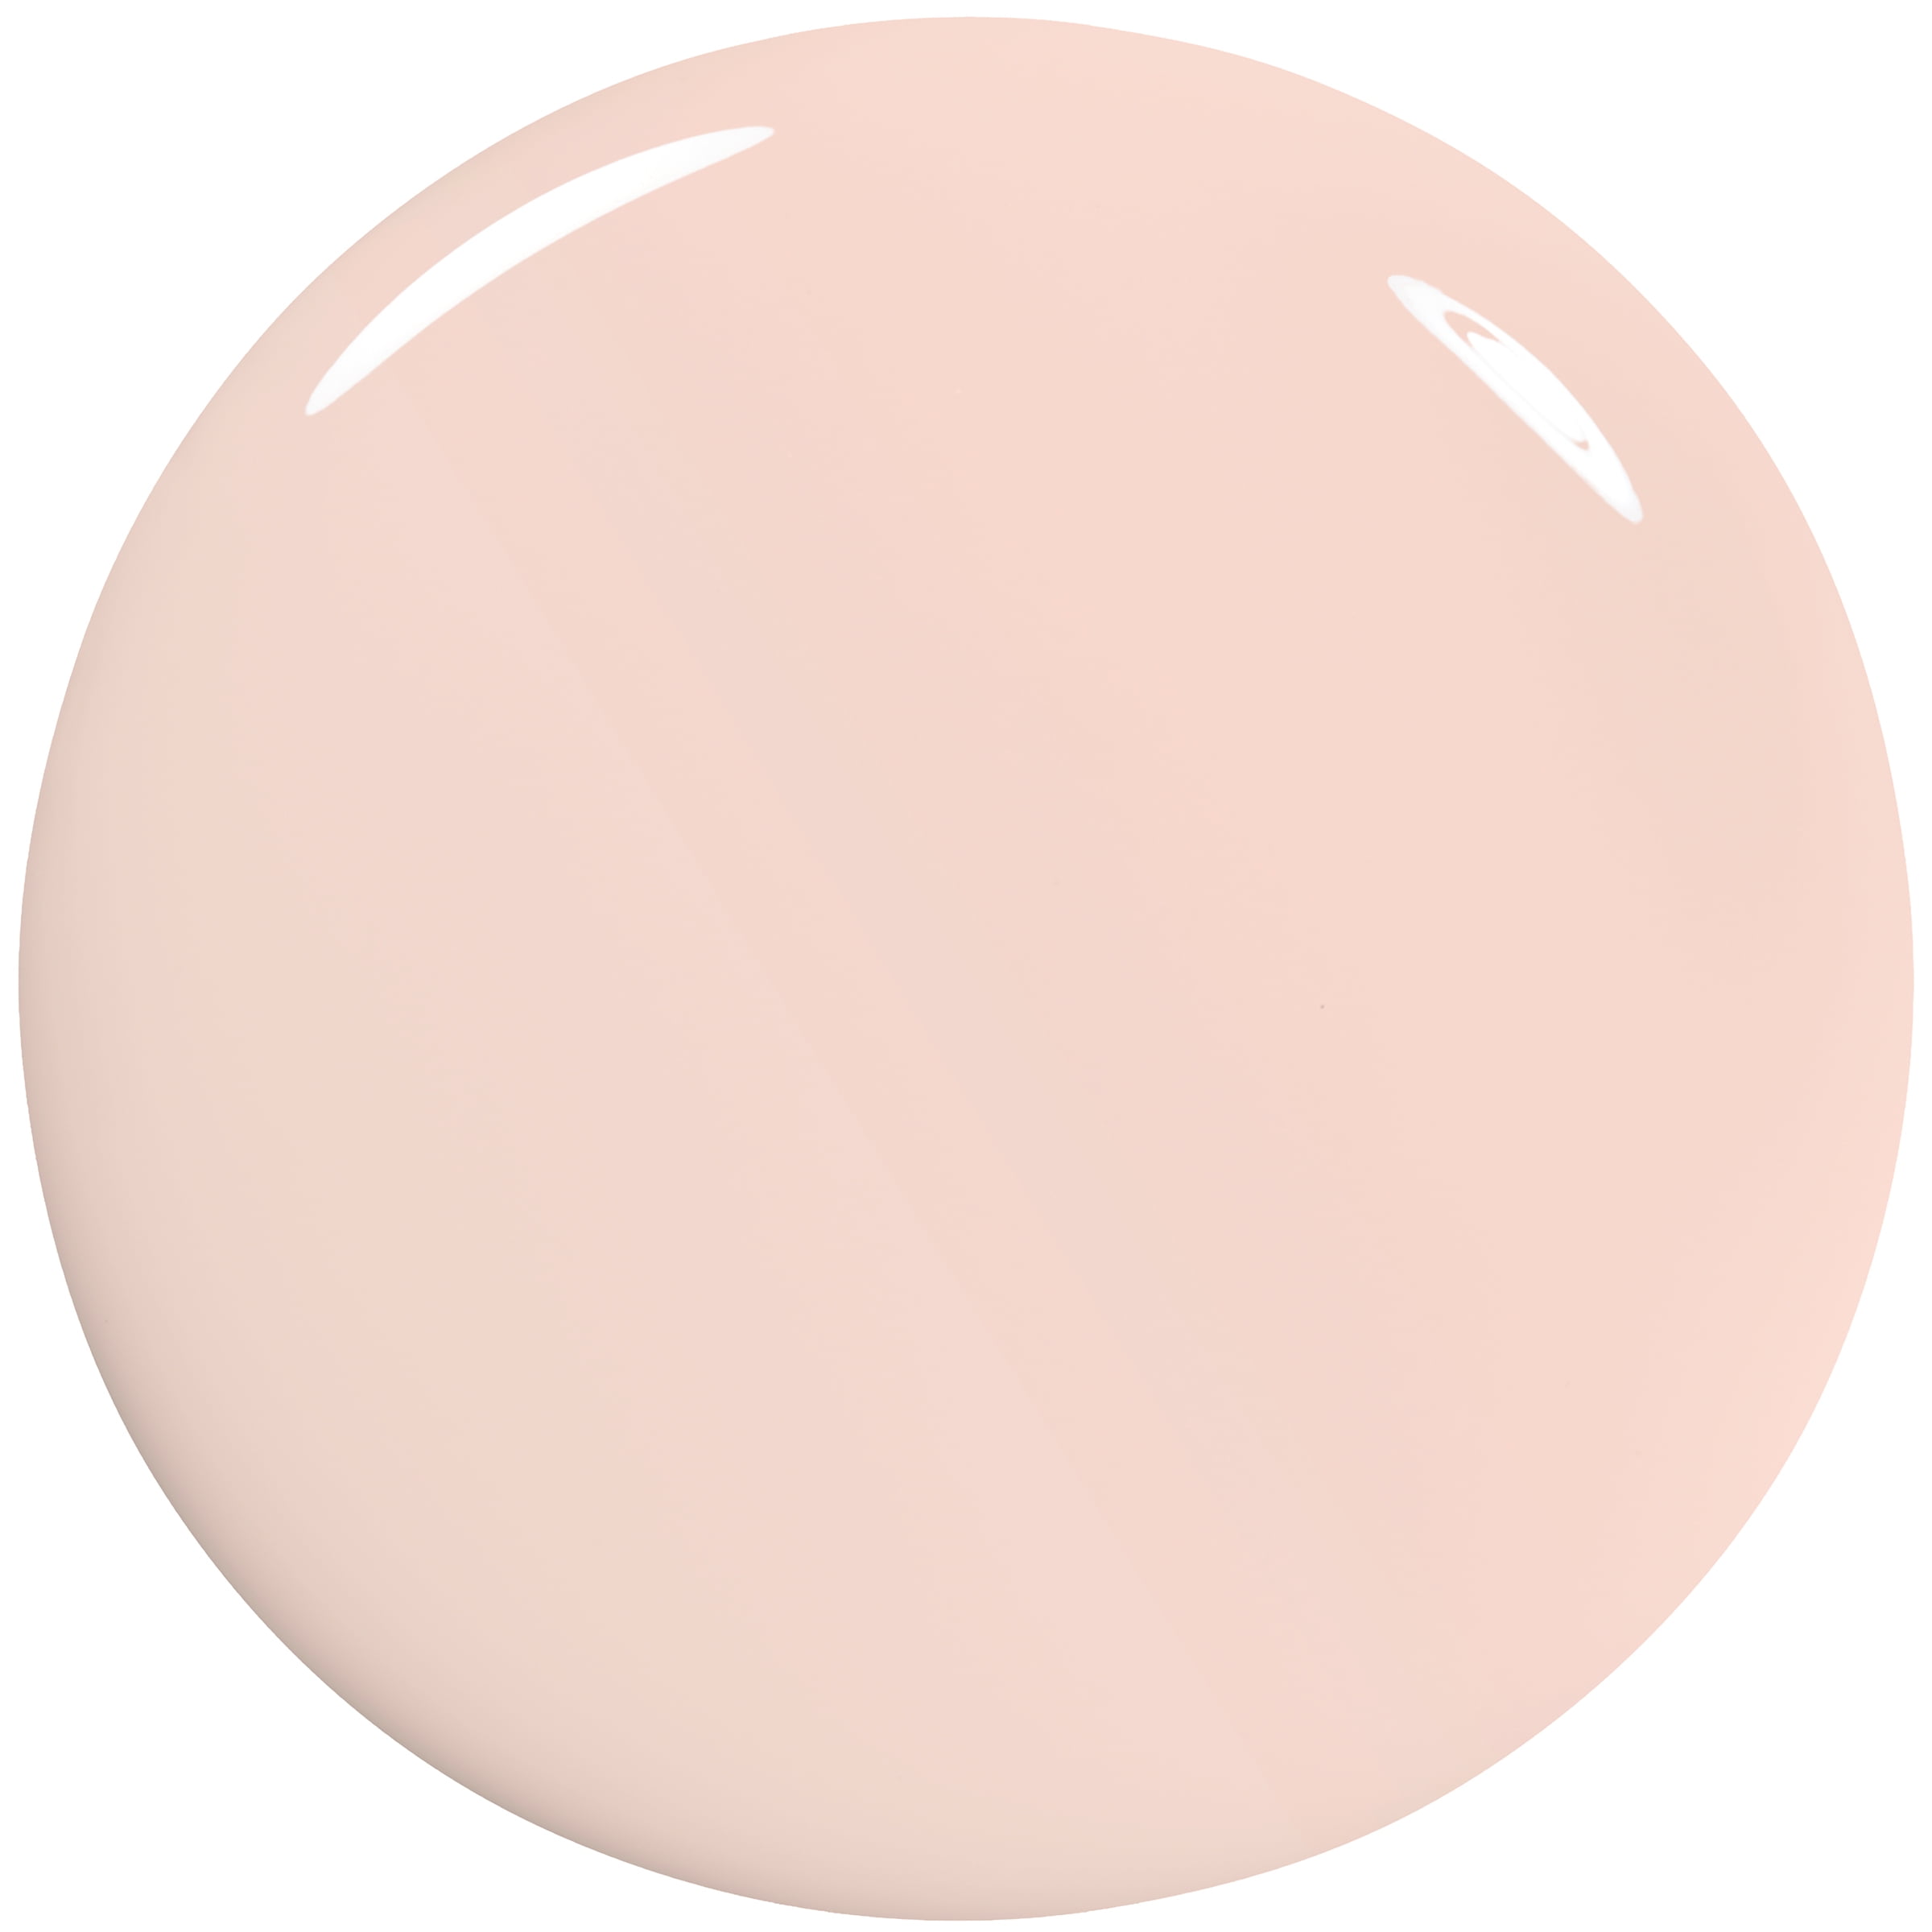 essie Expressie Quick Dry Vegan Nail Polish, Soft Pink Beige, 0.33 fl oz  Bottle | Nagellacke